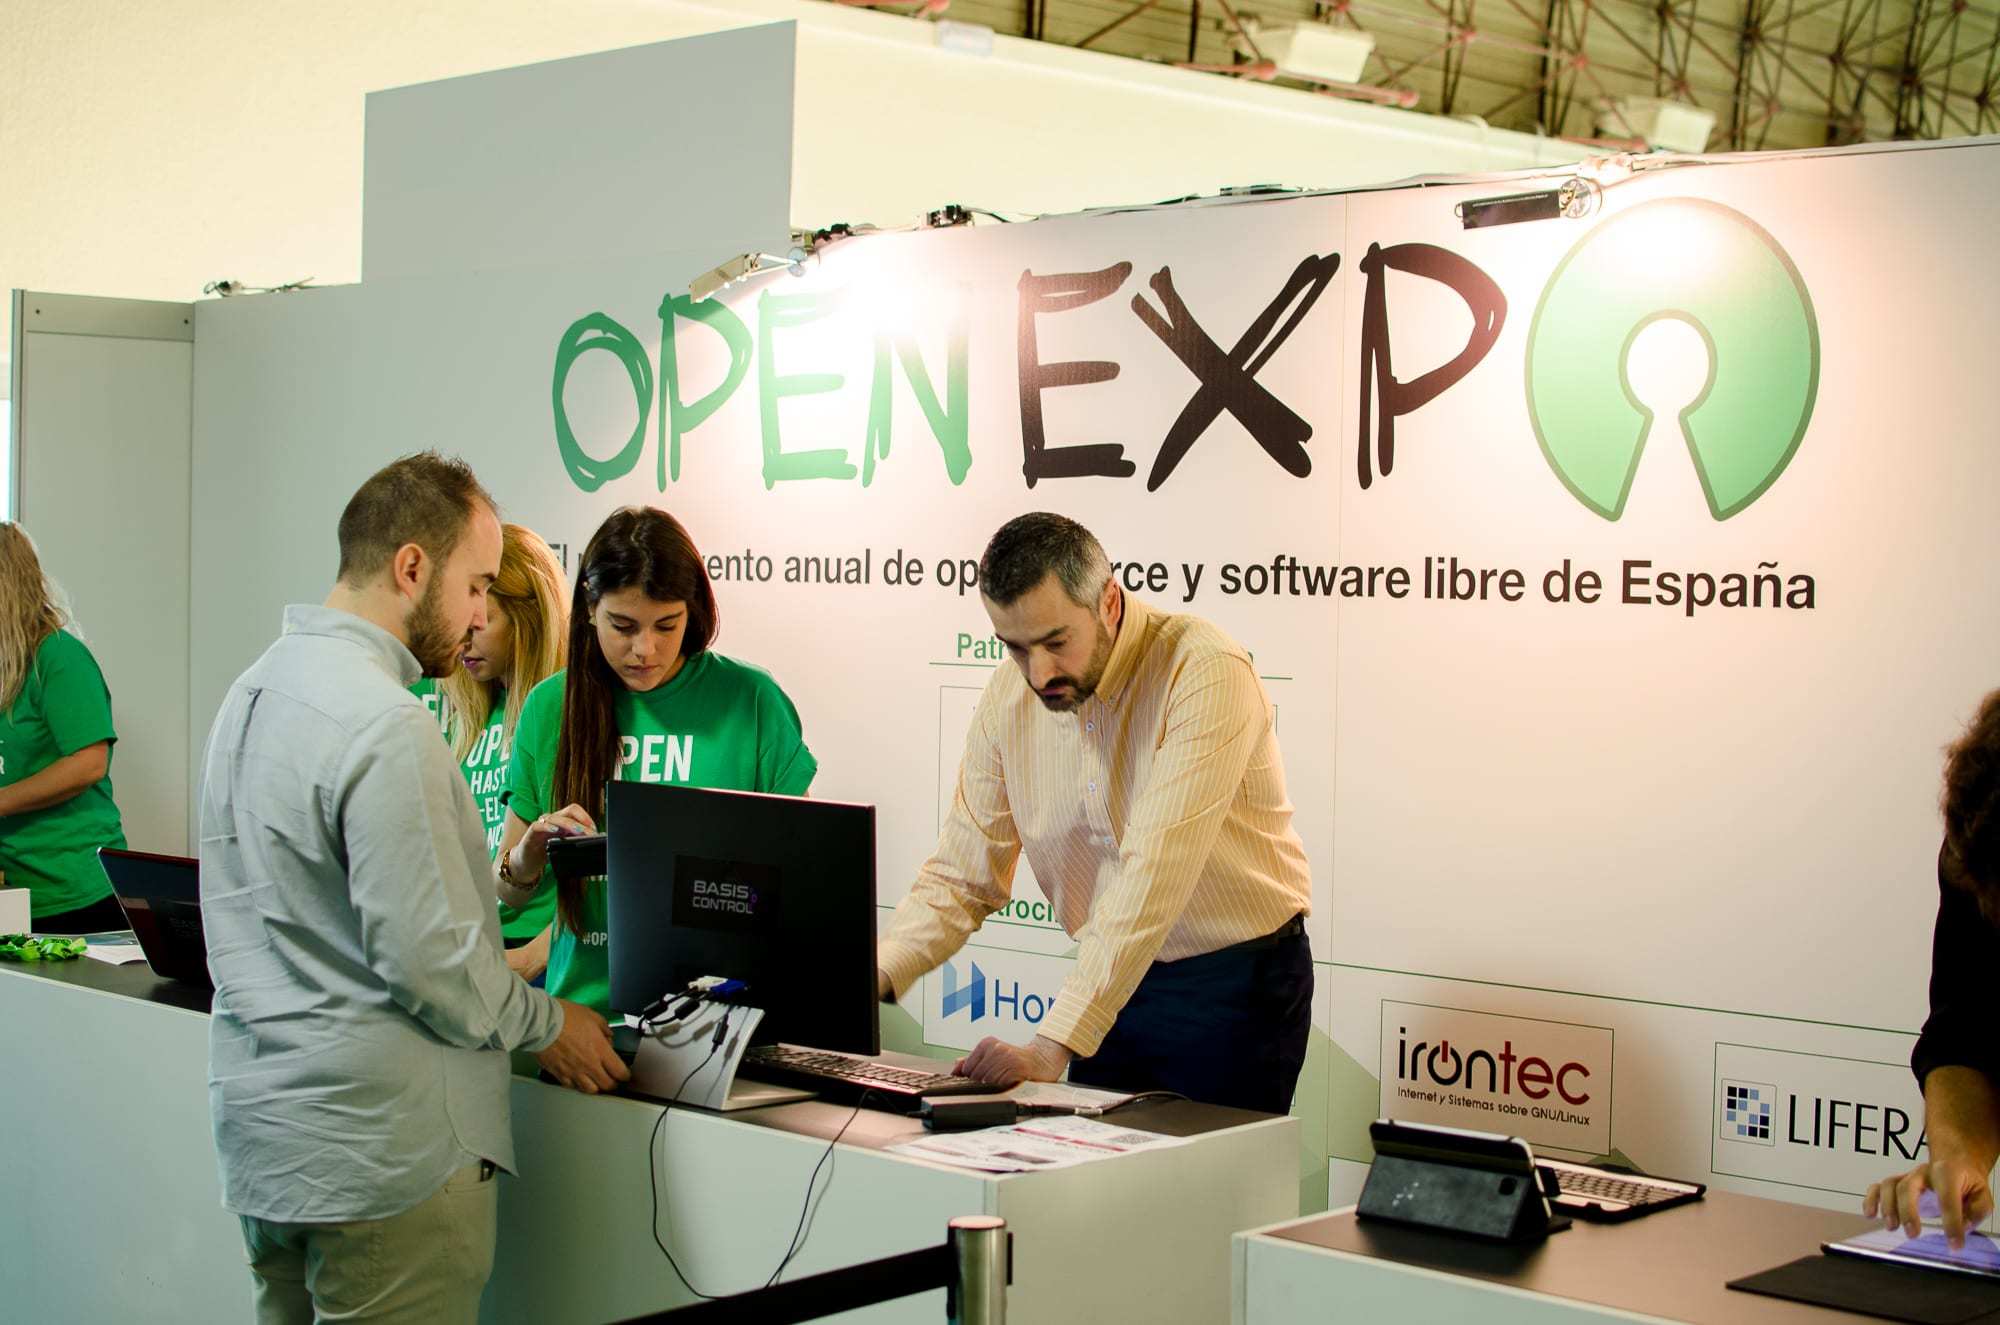 openexpo 2016